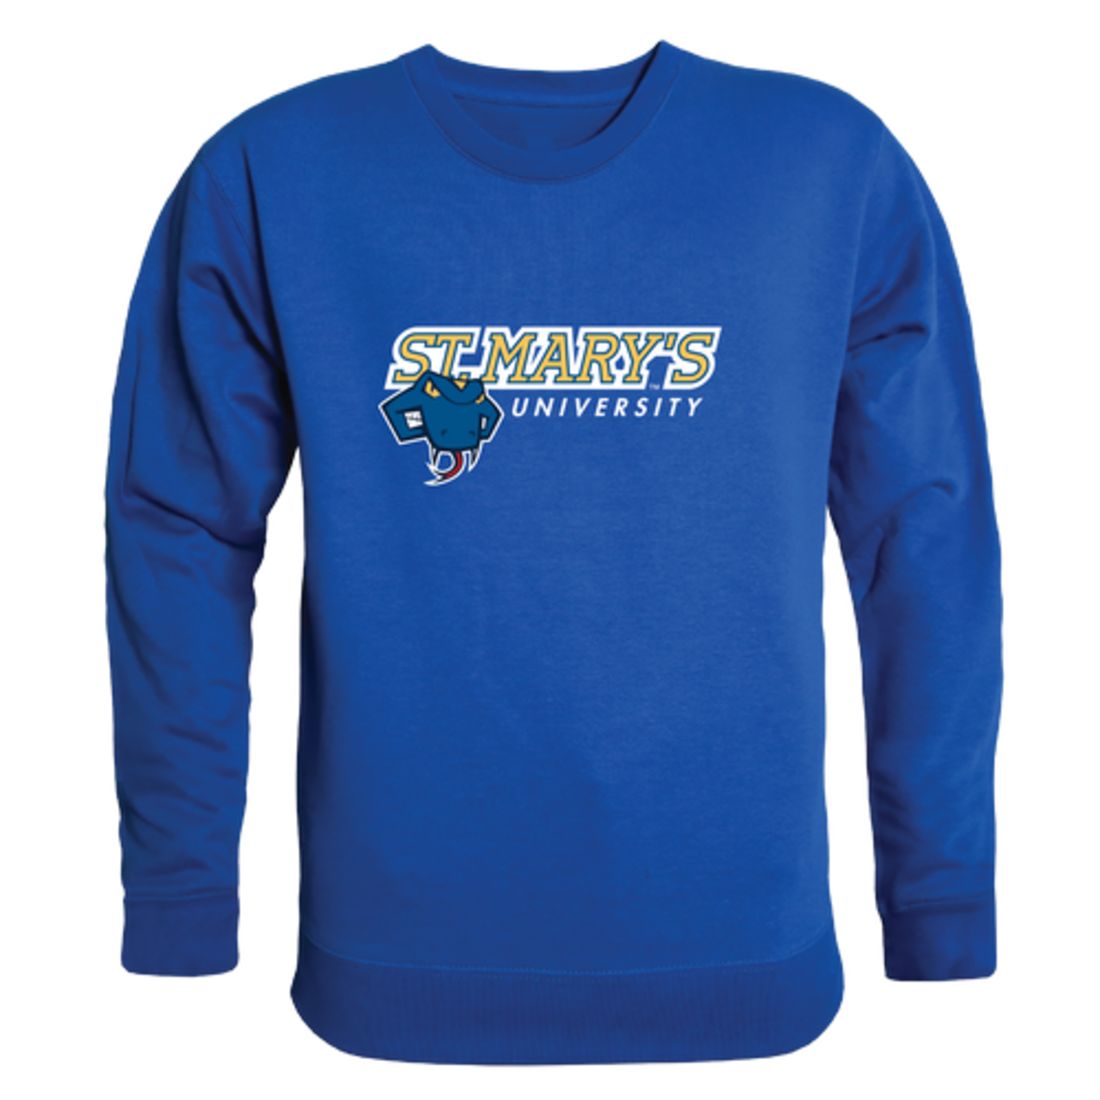 St.-Mary's-University--Rattlers-Collegiate-Fleece-Crewneck-Pullover-Sweatshirt